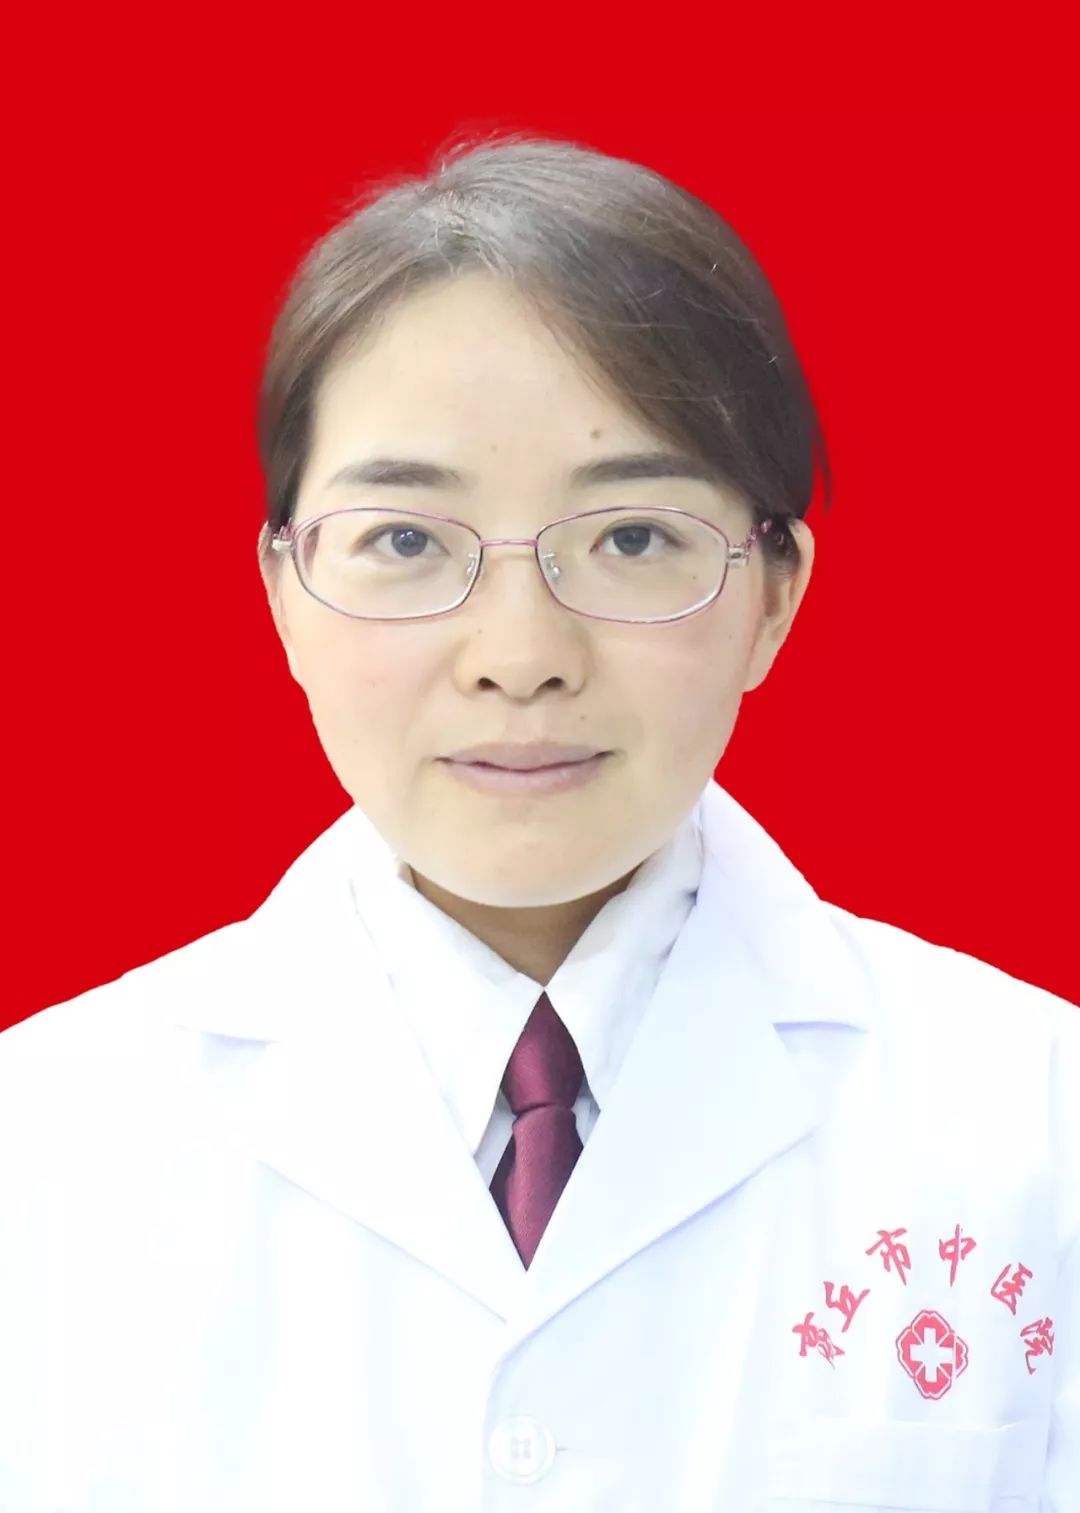 王海丽主治医师临床医学(全科医学)专业,2006年毕业于郑州大学医学院